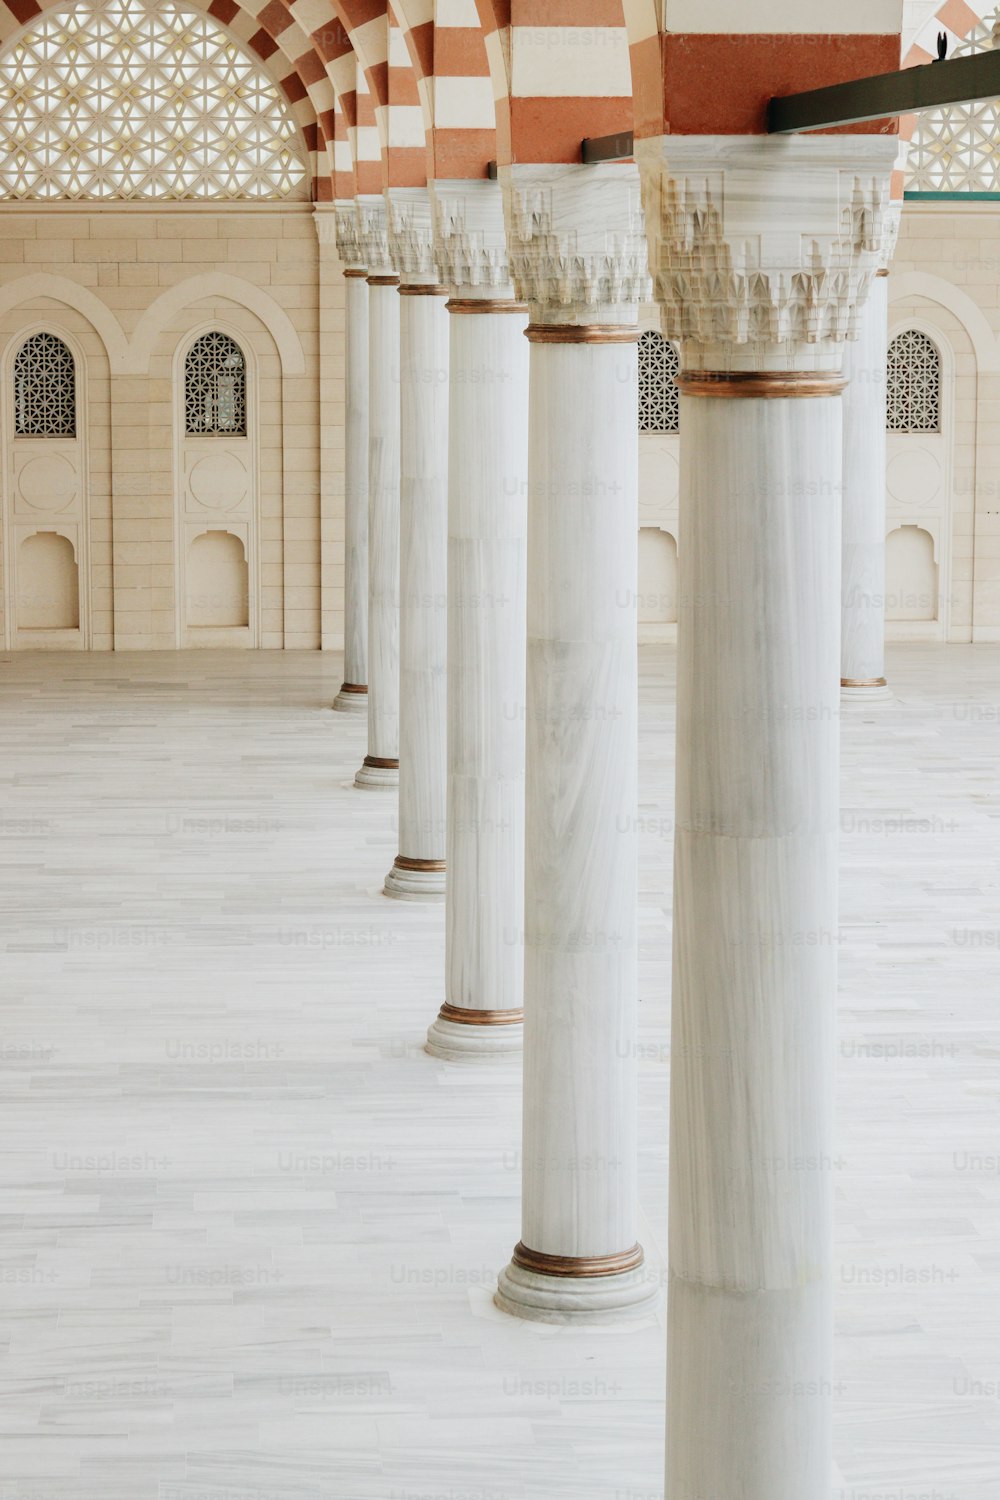 建物の白い大理石の柱の列